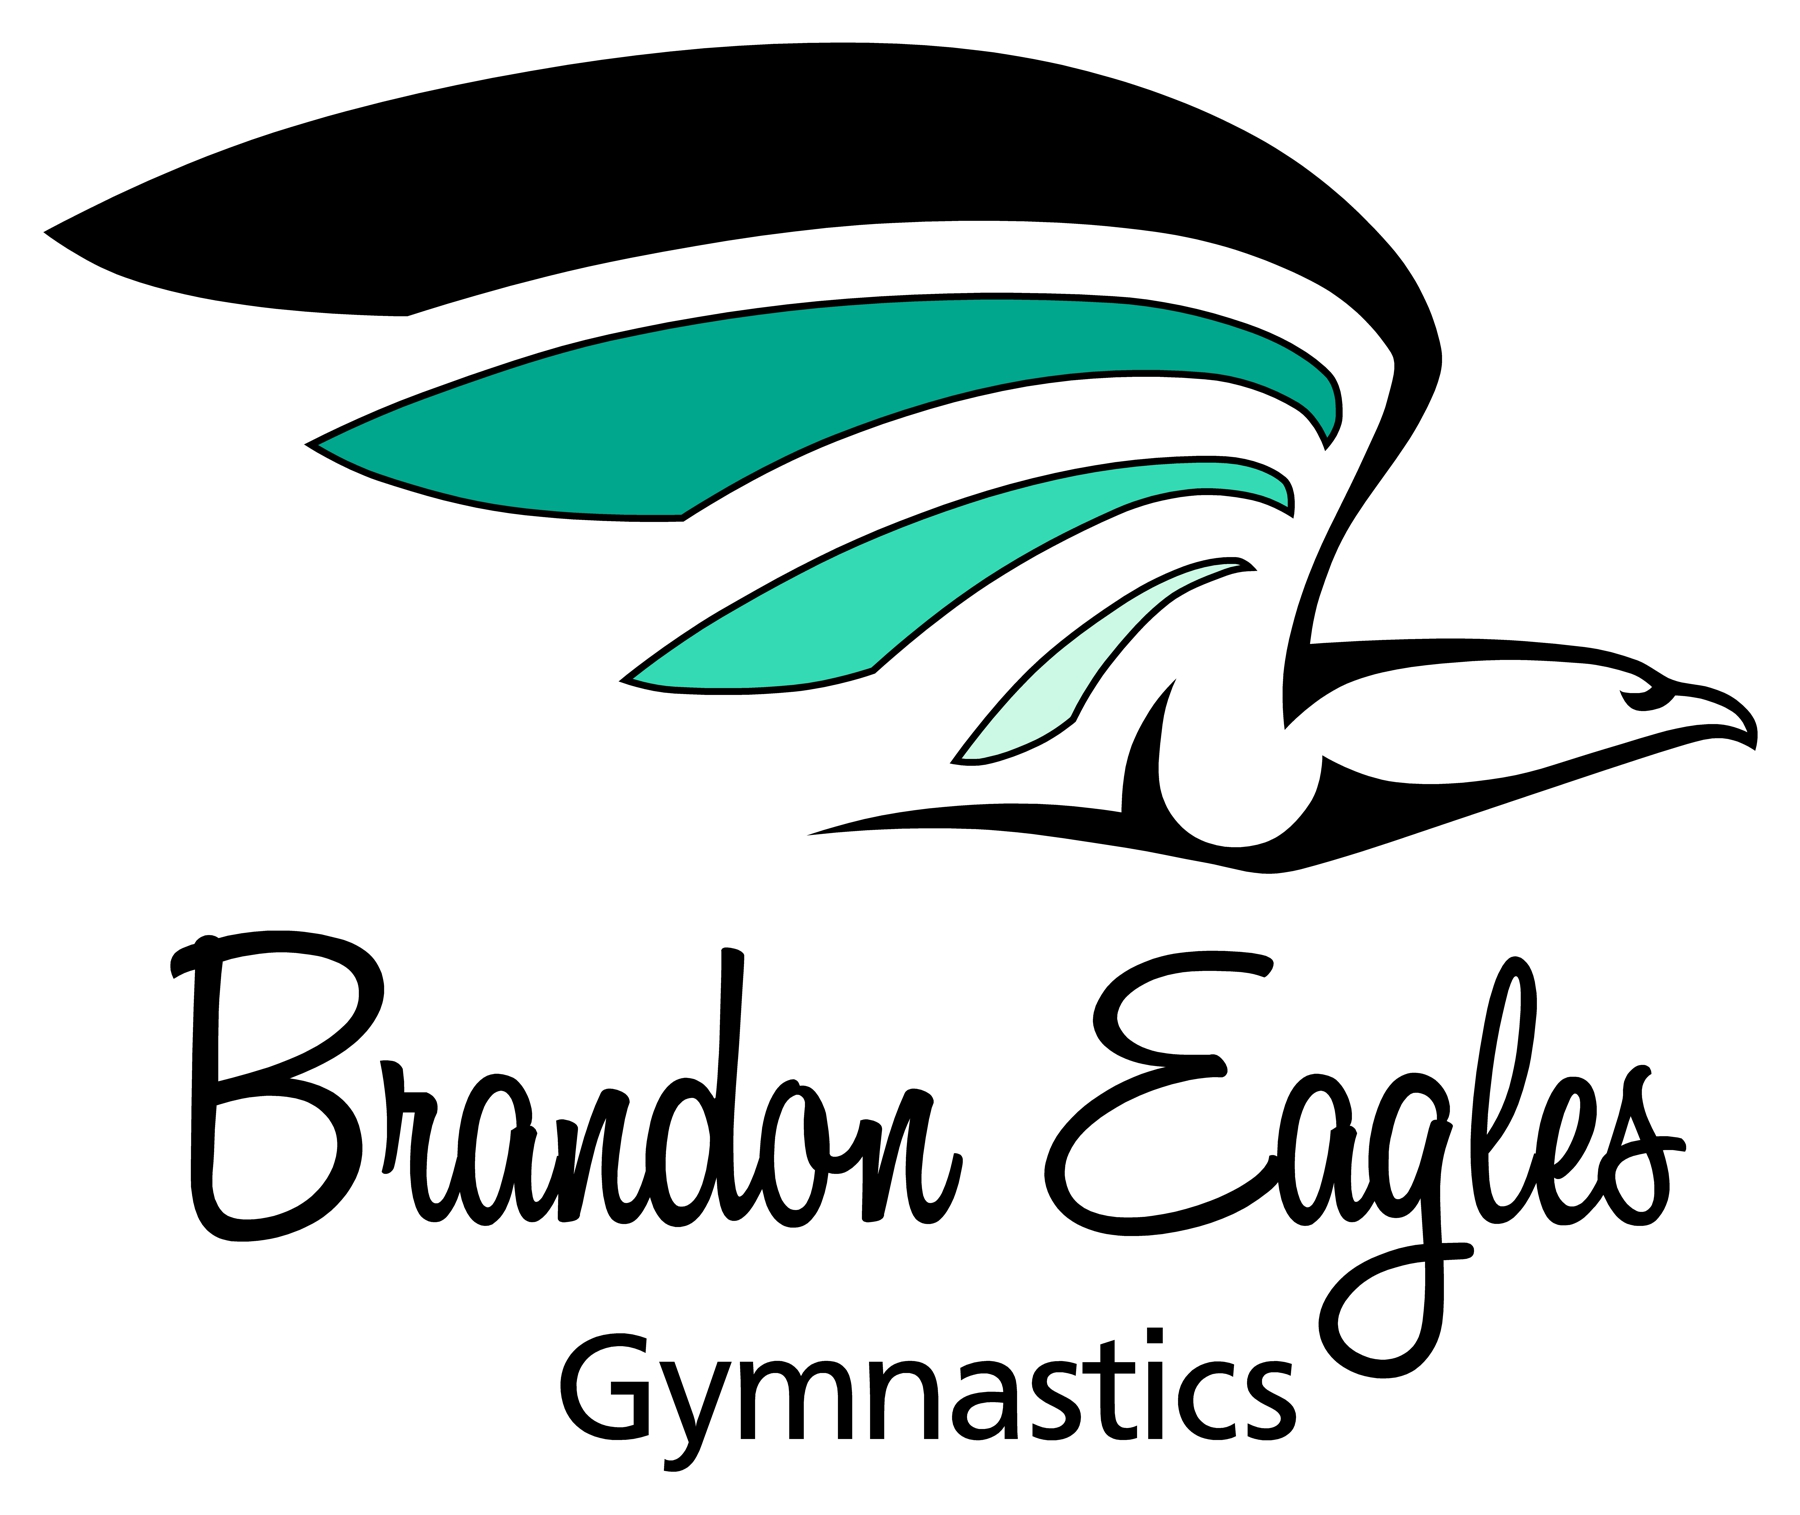 Eagles Gymnastics Centre